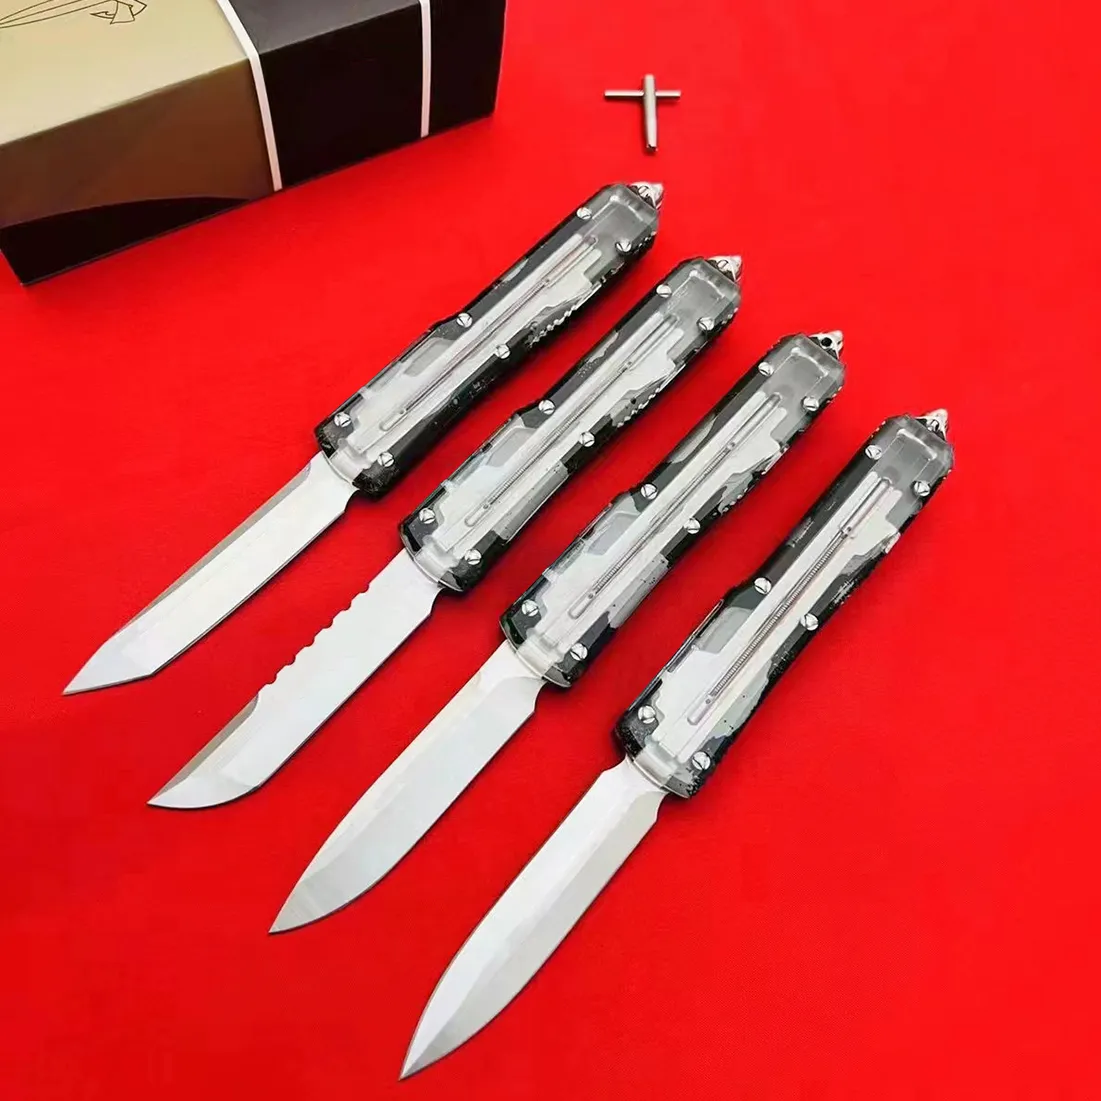 Couteau tactique automatique de haute qualité D2 lame satinée en aluminium d'aviation avec poignée en acrylique transparent couteaux tactiques de survie en plein air avec sac en nylon